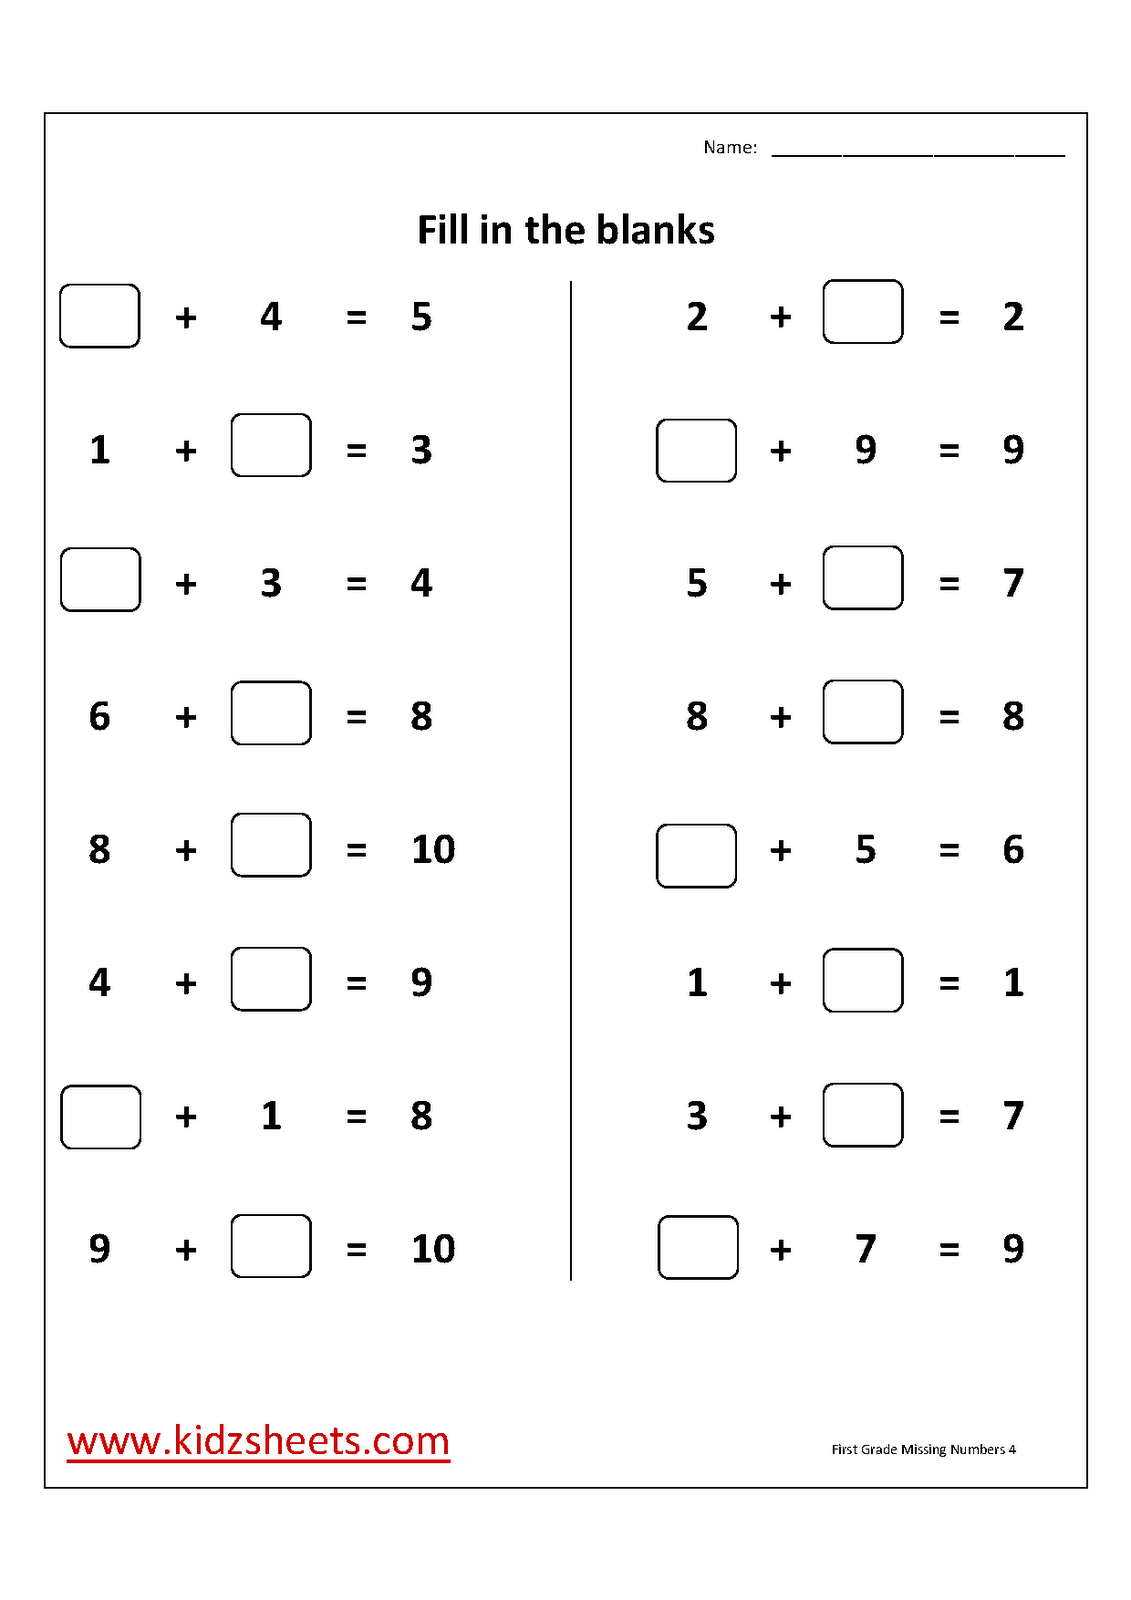 Find Missing Number Worksheets 1st Grade